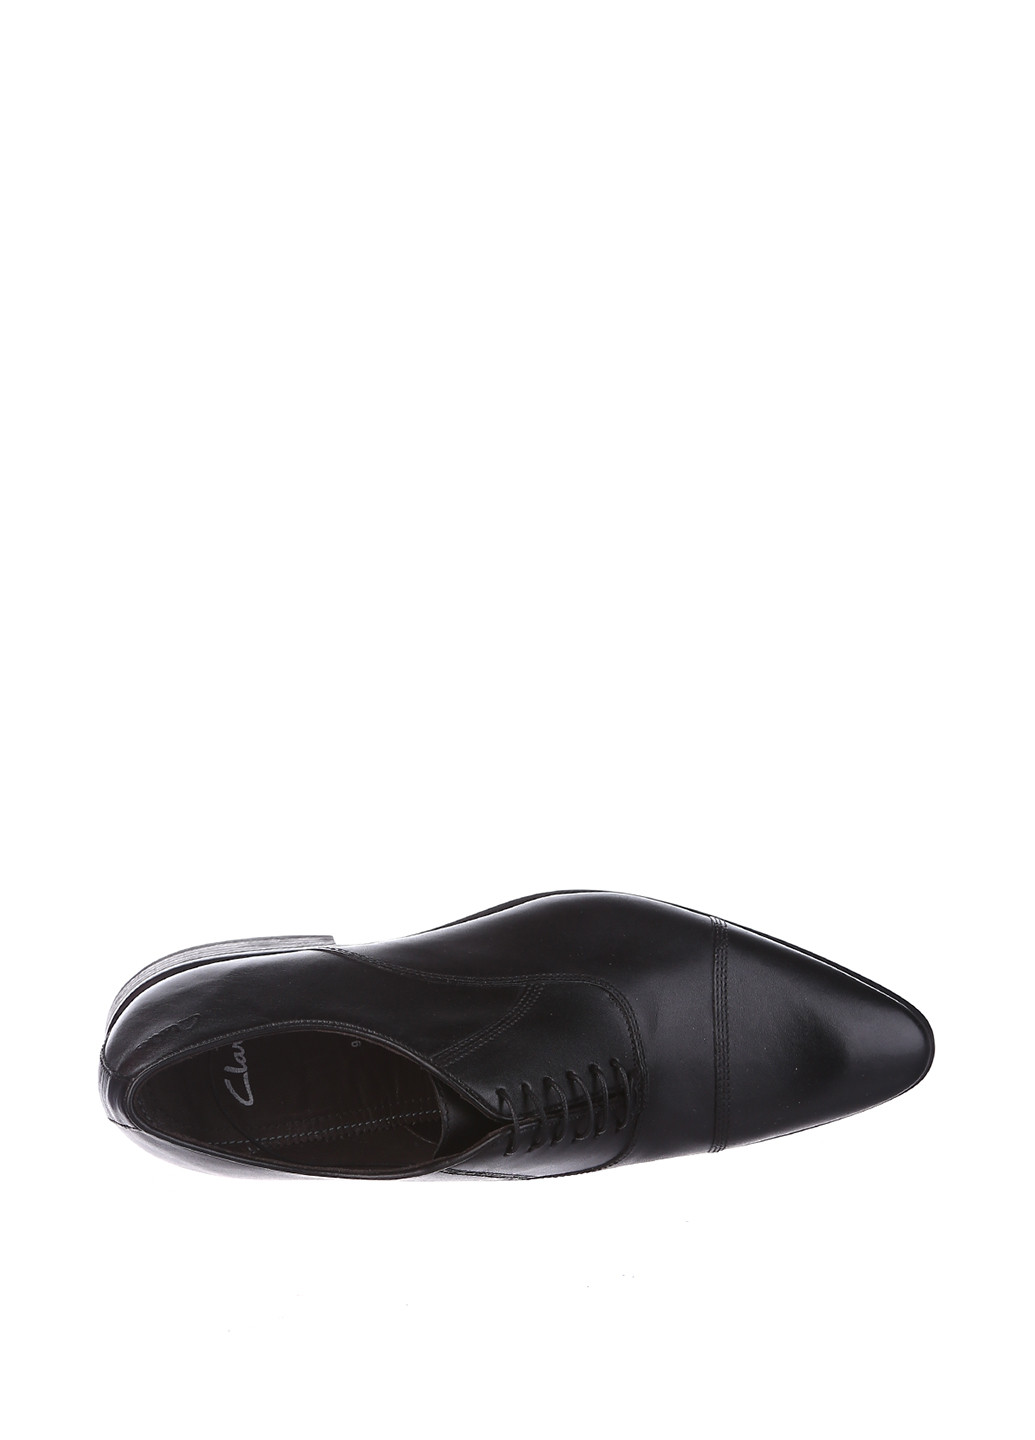 Черные кэжуал туфли Clarks на шнурках